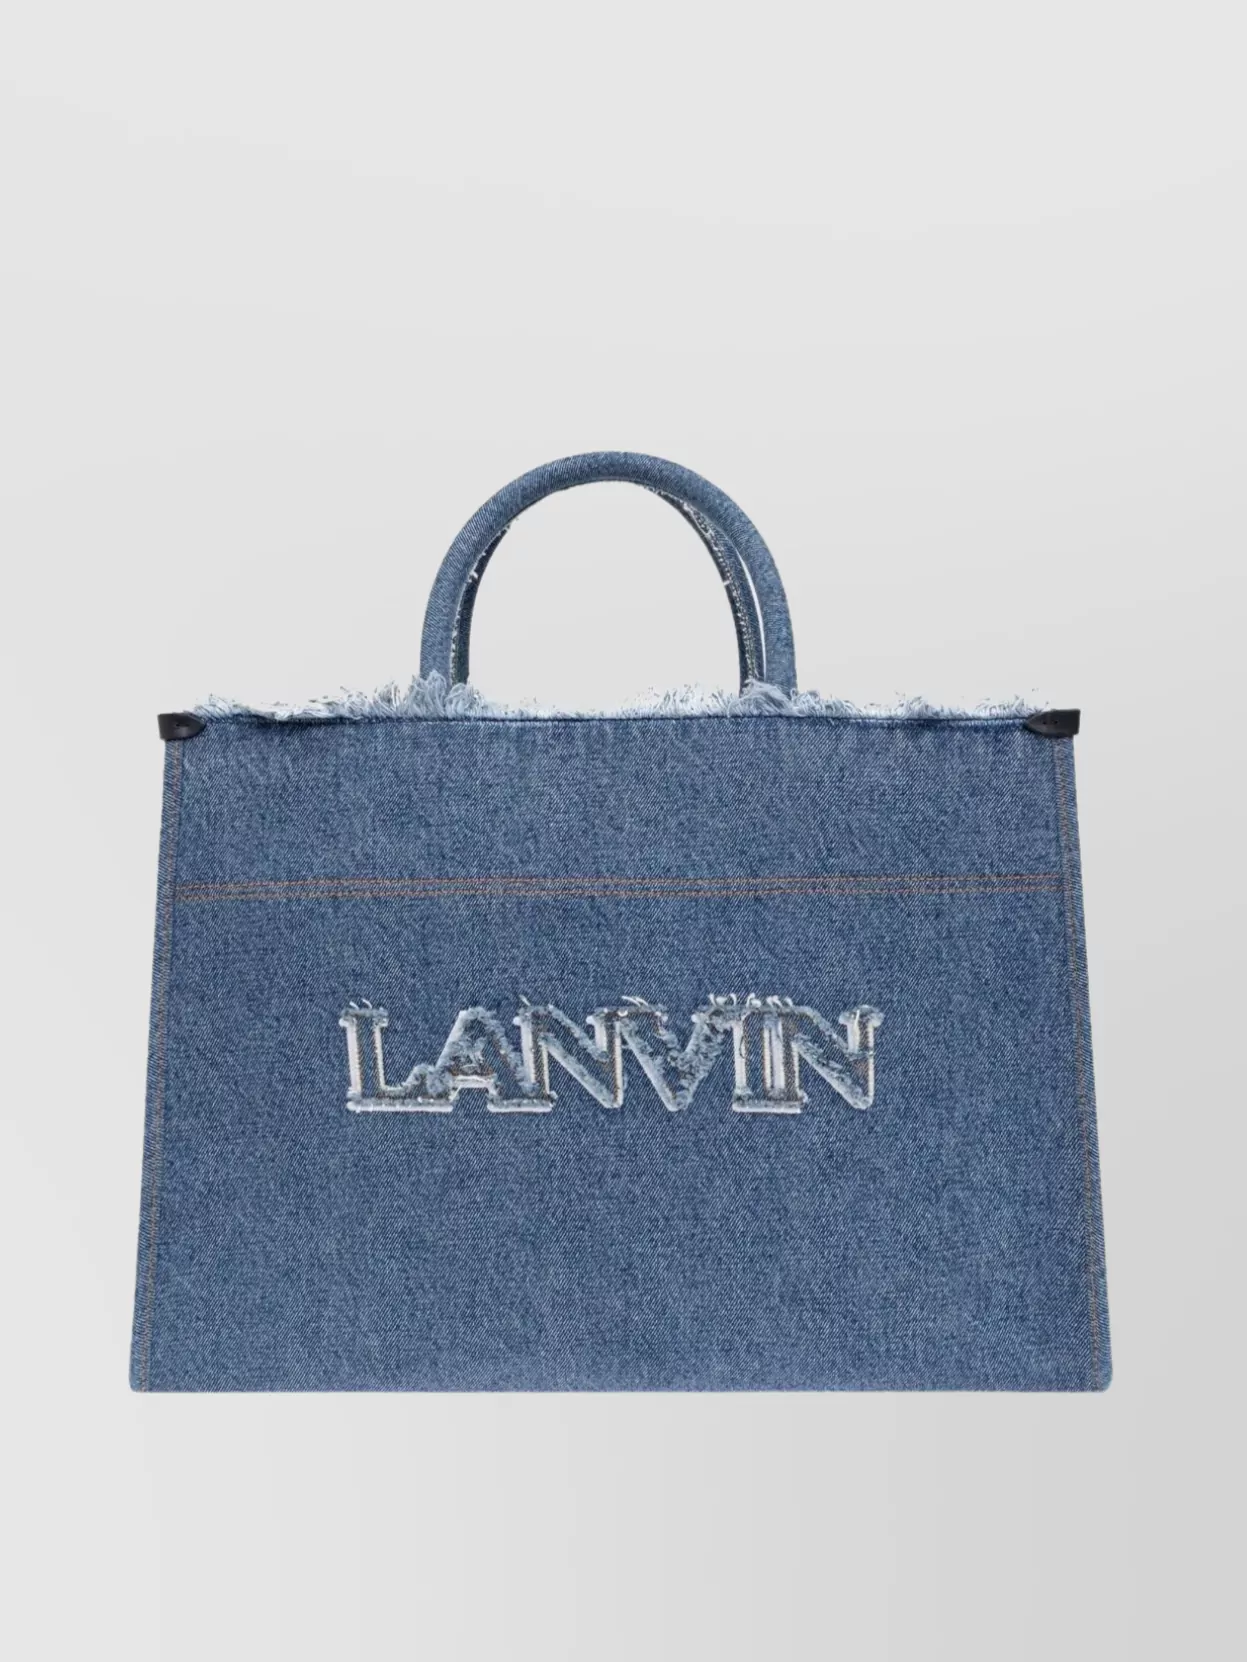 Lanvin Denim Tote Bag Frayed Detailing